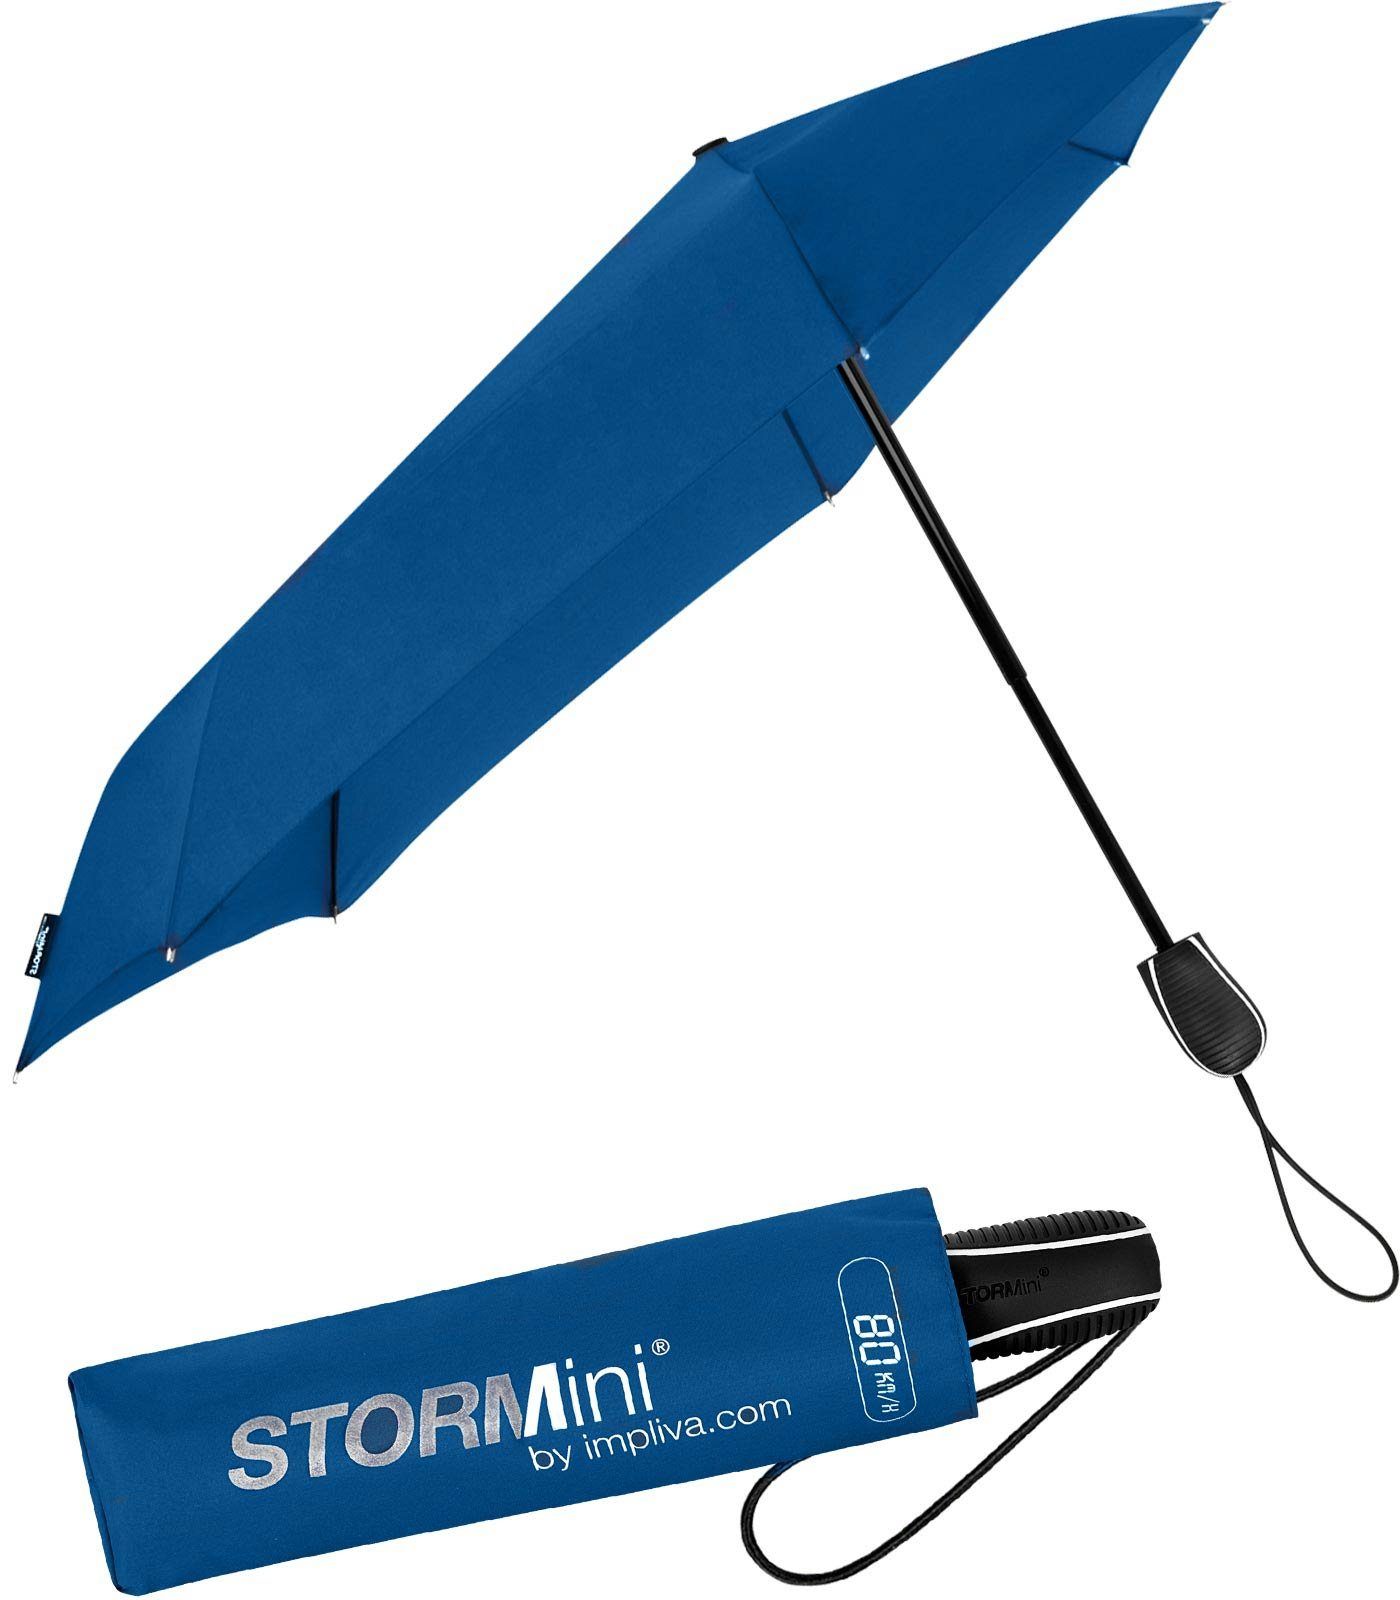 Impliva Taschenregenschirm STORMini aerodynamischer Sturmschirm, durch seine besondere Form dreht sich der Schirm in den Wind, hält bis zu 80 km/h aus royalblue